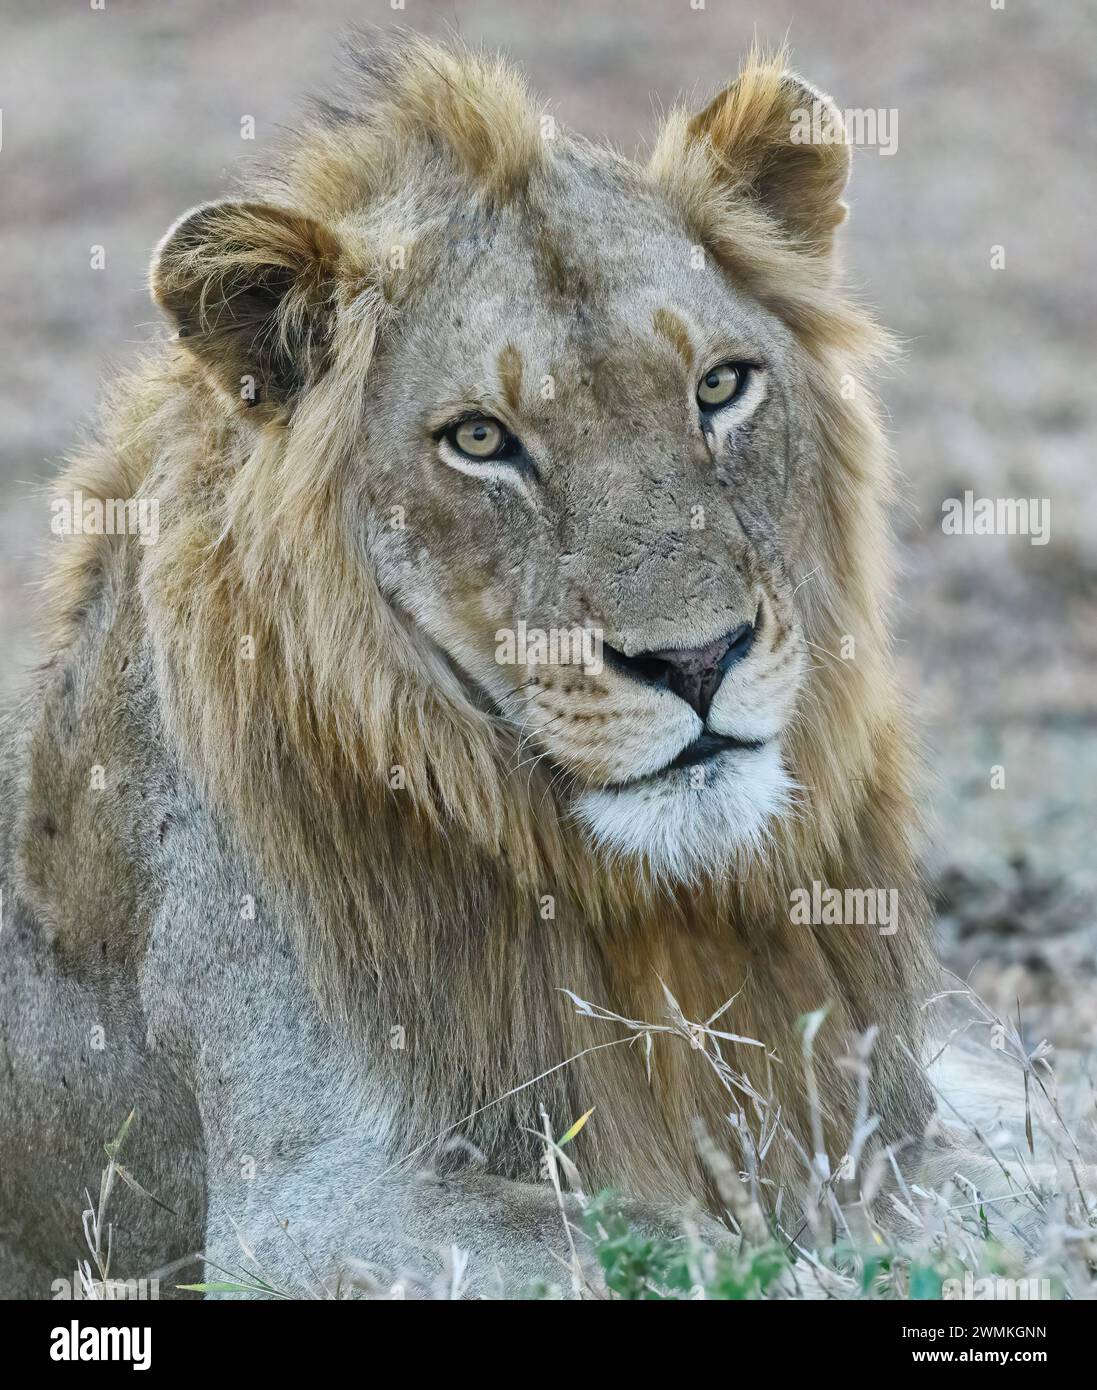 Porträt eines männlichen Löwen, der direkt auf den Betrachter blickt Stockfoto